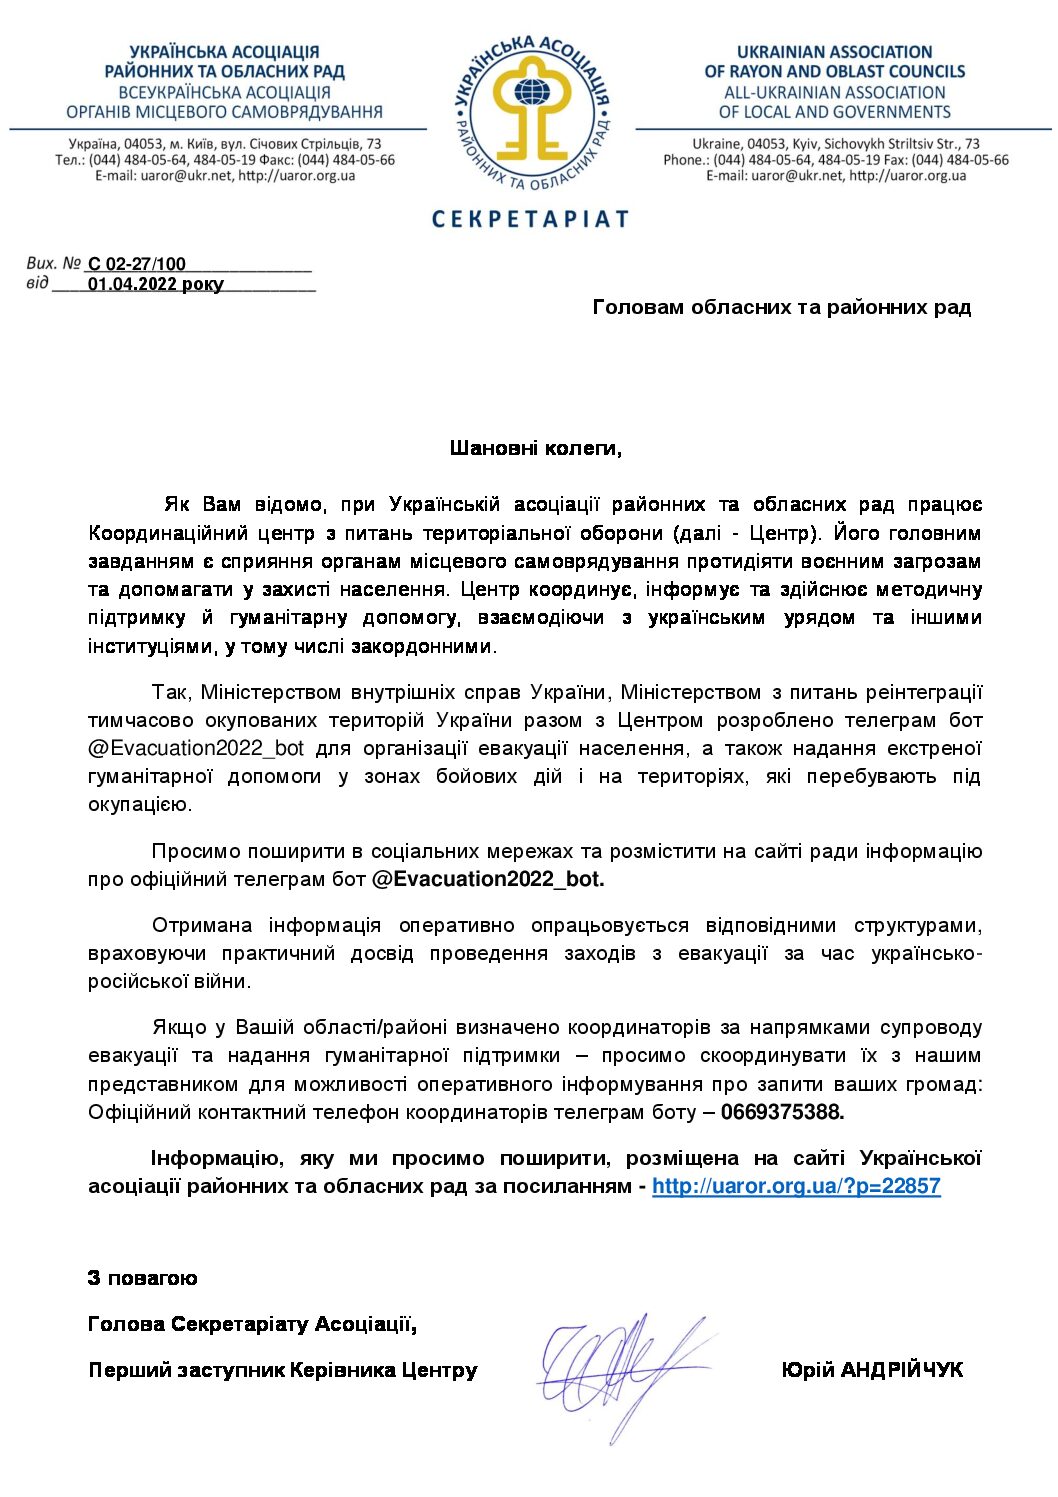 При Українській асоціації районних та обласних рад працює Координаційний центр з питань територіальної оборони